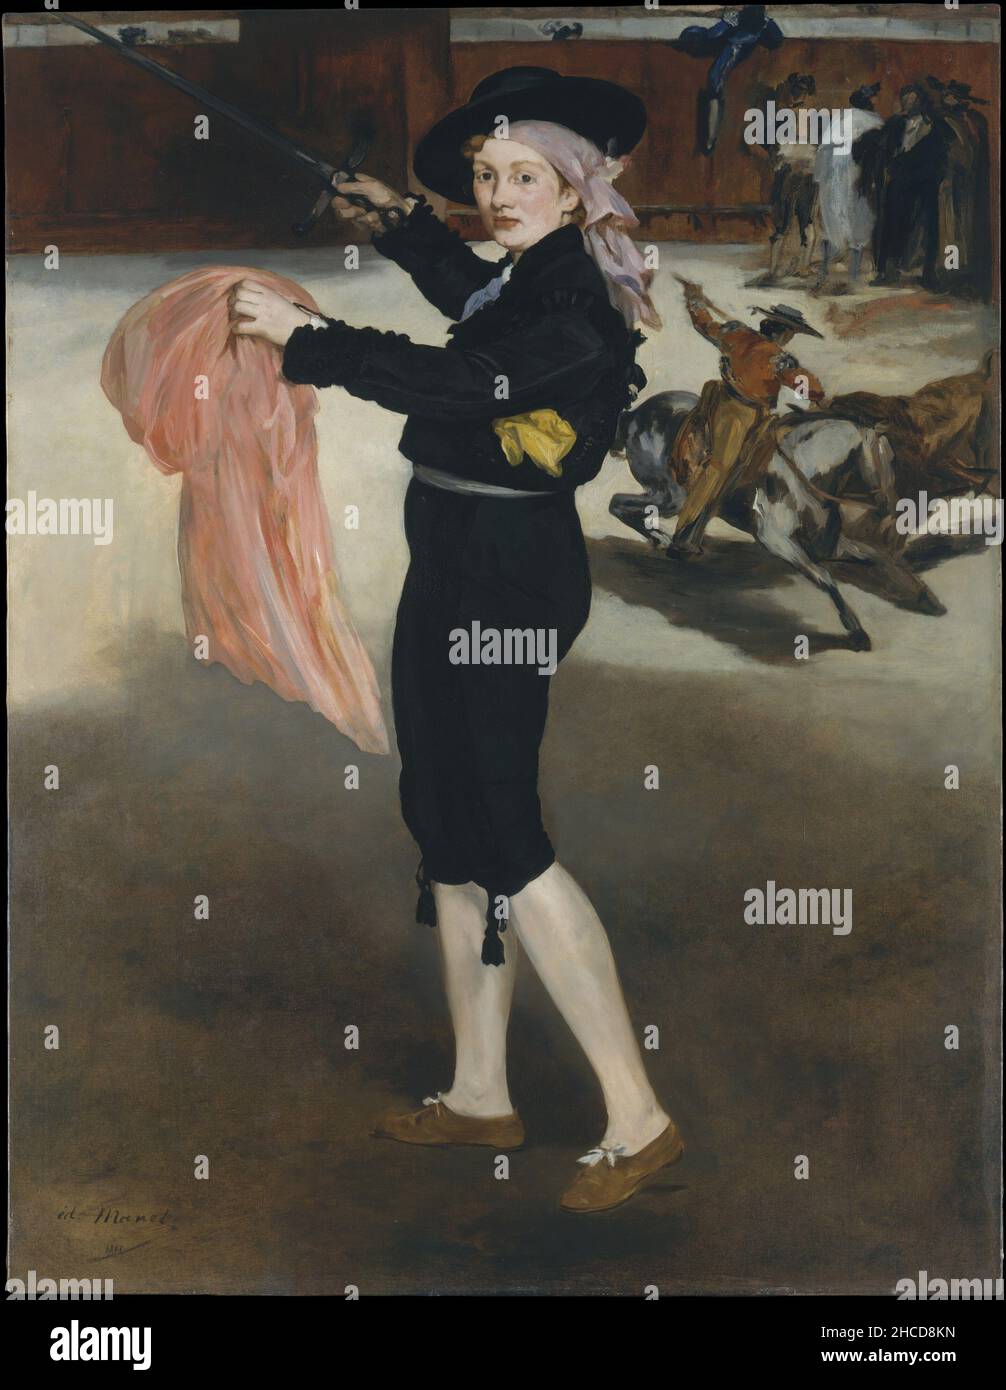 Mademoiselle V. dans le Costume d'une Espada d'Edouard Manet.Le thème de la peinture est Victorine Meurent, habillée comme un toréghteur. Banque D'Images